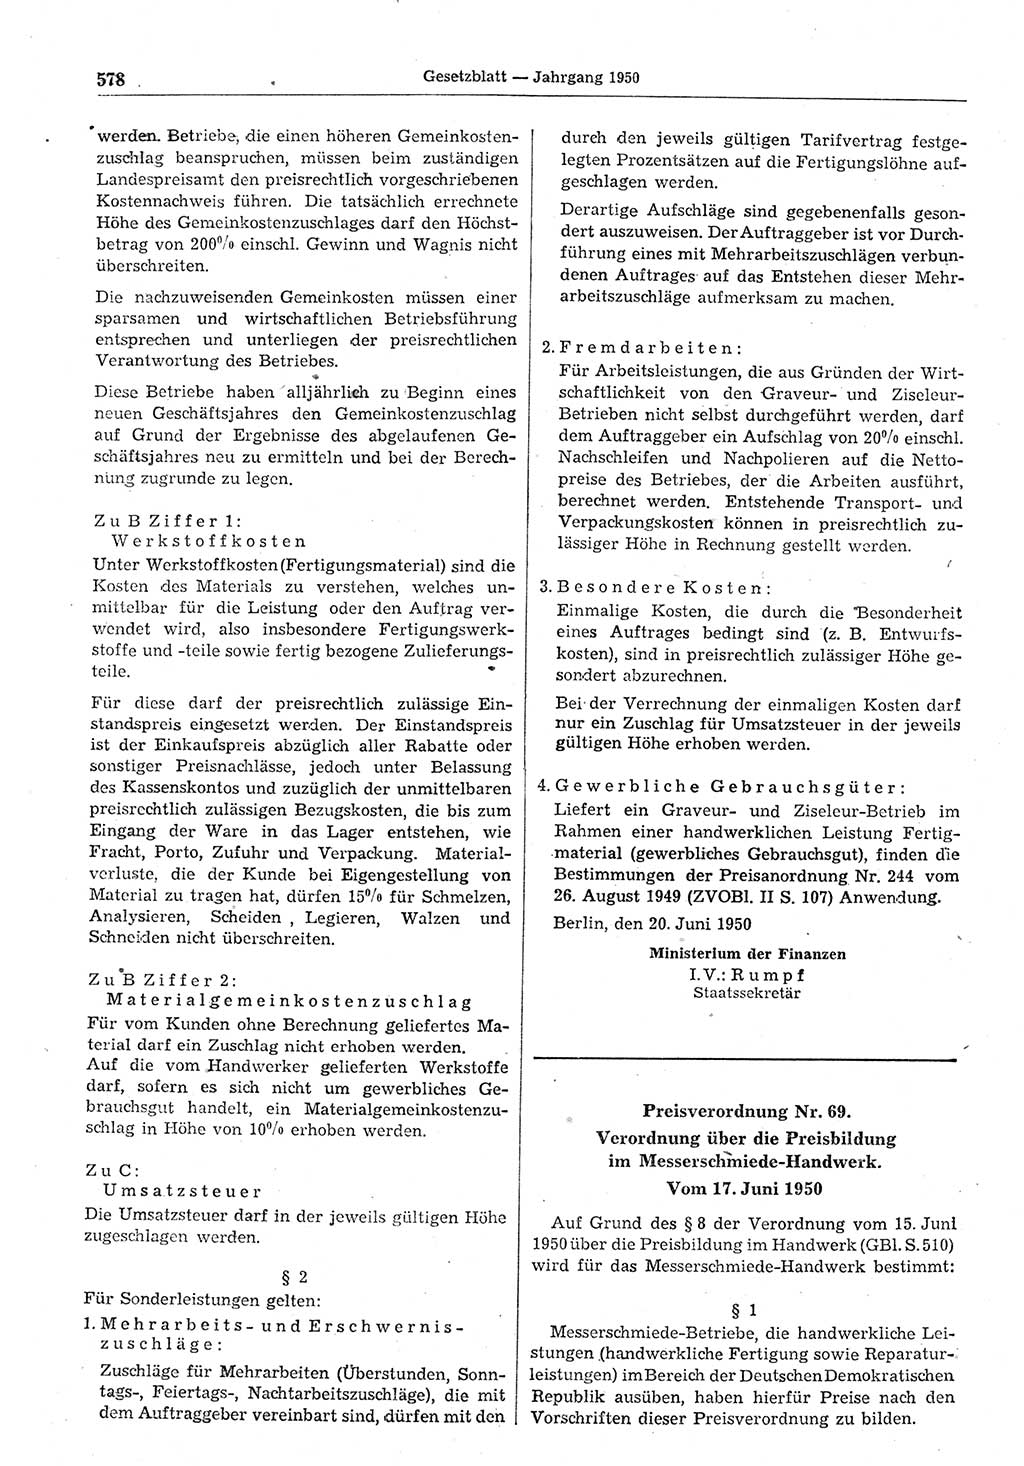 Gesetzblatt (GBl.) der Deutschen Demokratischen Republik (DDR) 1950, Seite 578 (GBl. DDR 1950, S. 578)